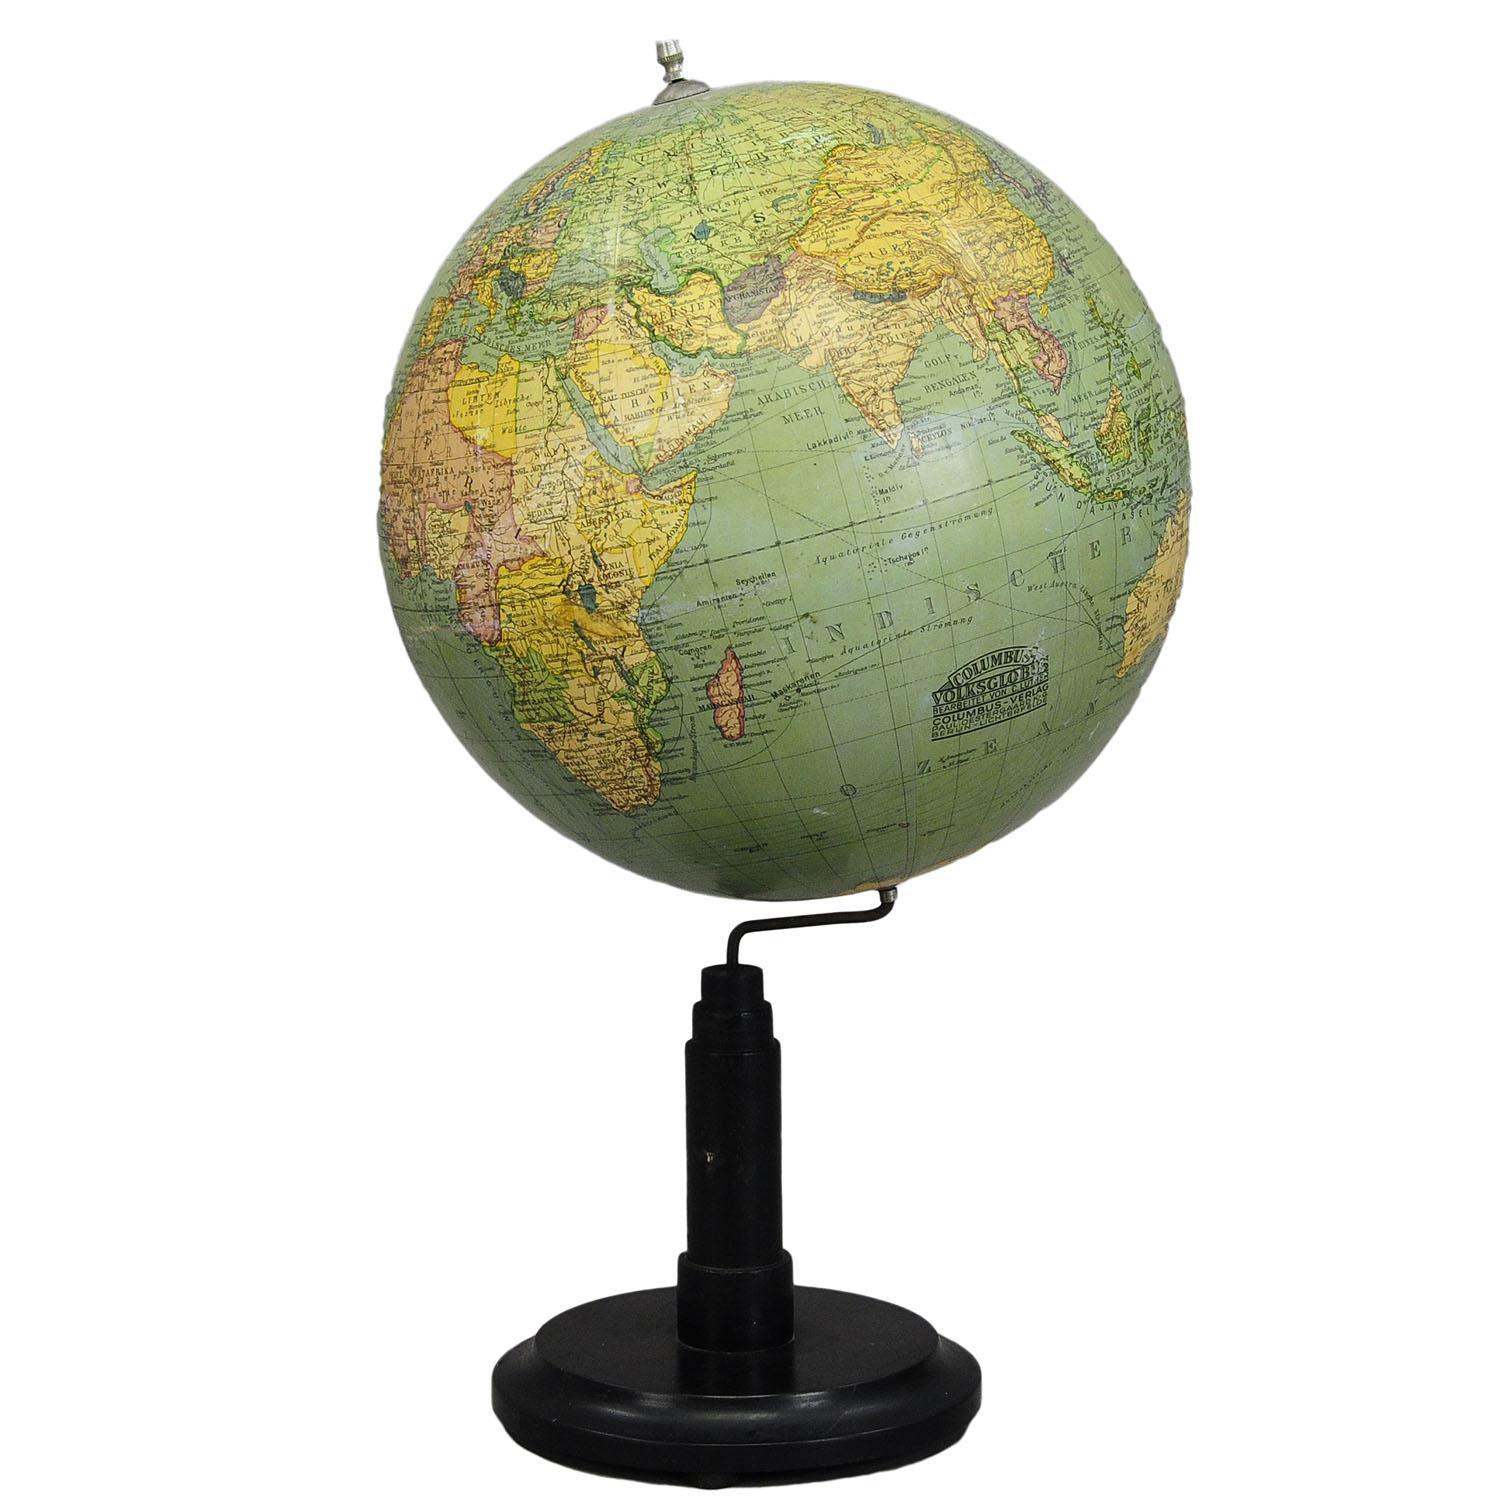 Globe terrestre Columbus de Paul Oestergaard - Berlin, vers 1900

Globe terrestre antique traditionnel de Columbus avec une merveilleuse patine. Édité par Paul Oestergaard et révisé par C.C., Berlin vers 1900. Il a été utilisé comme matériel